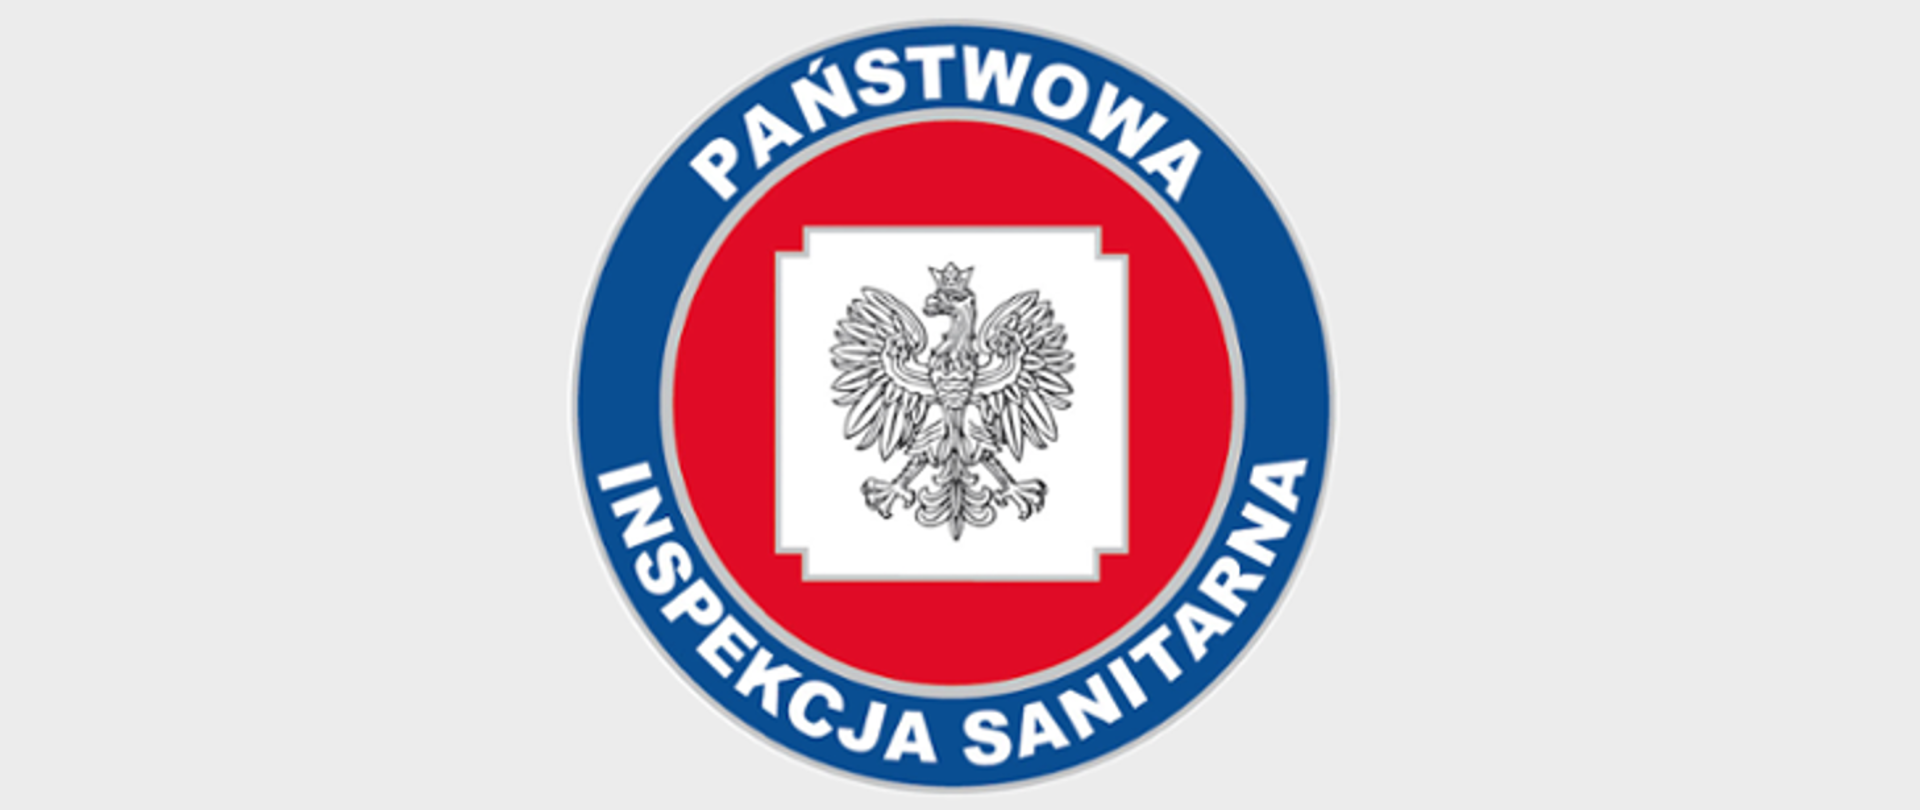 Logotyp Państwowej Inspekcji Sanitarnej